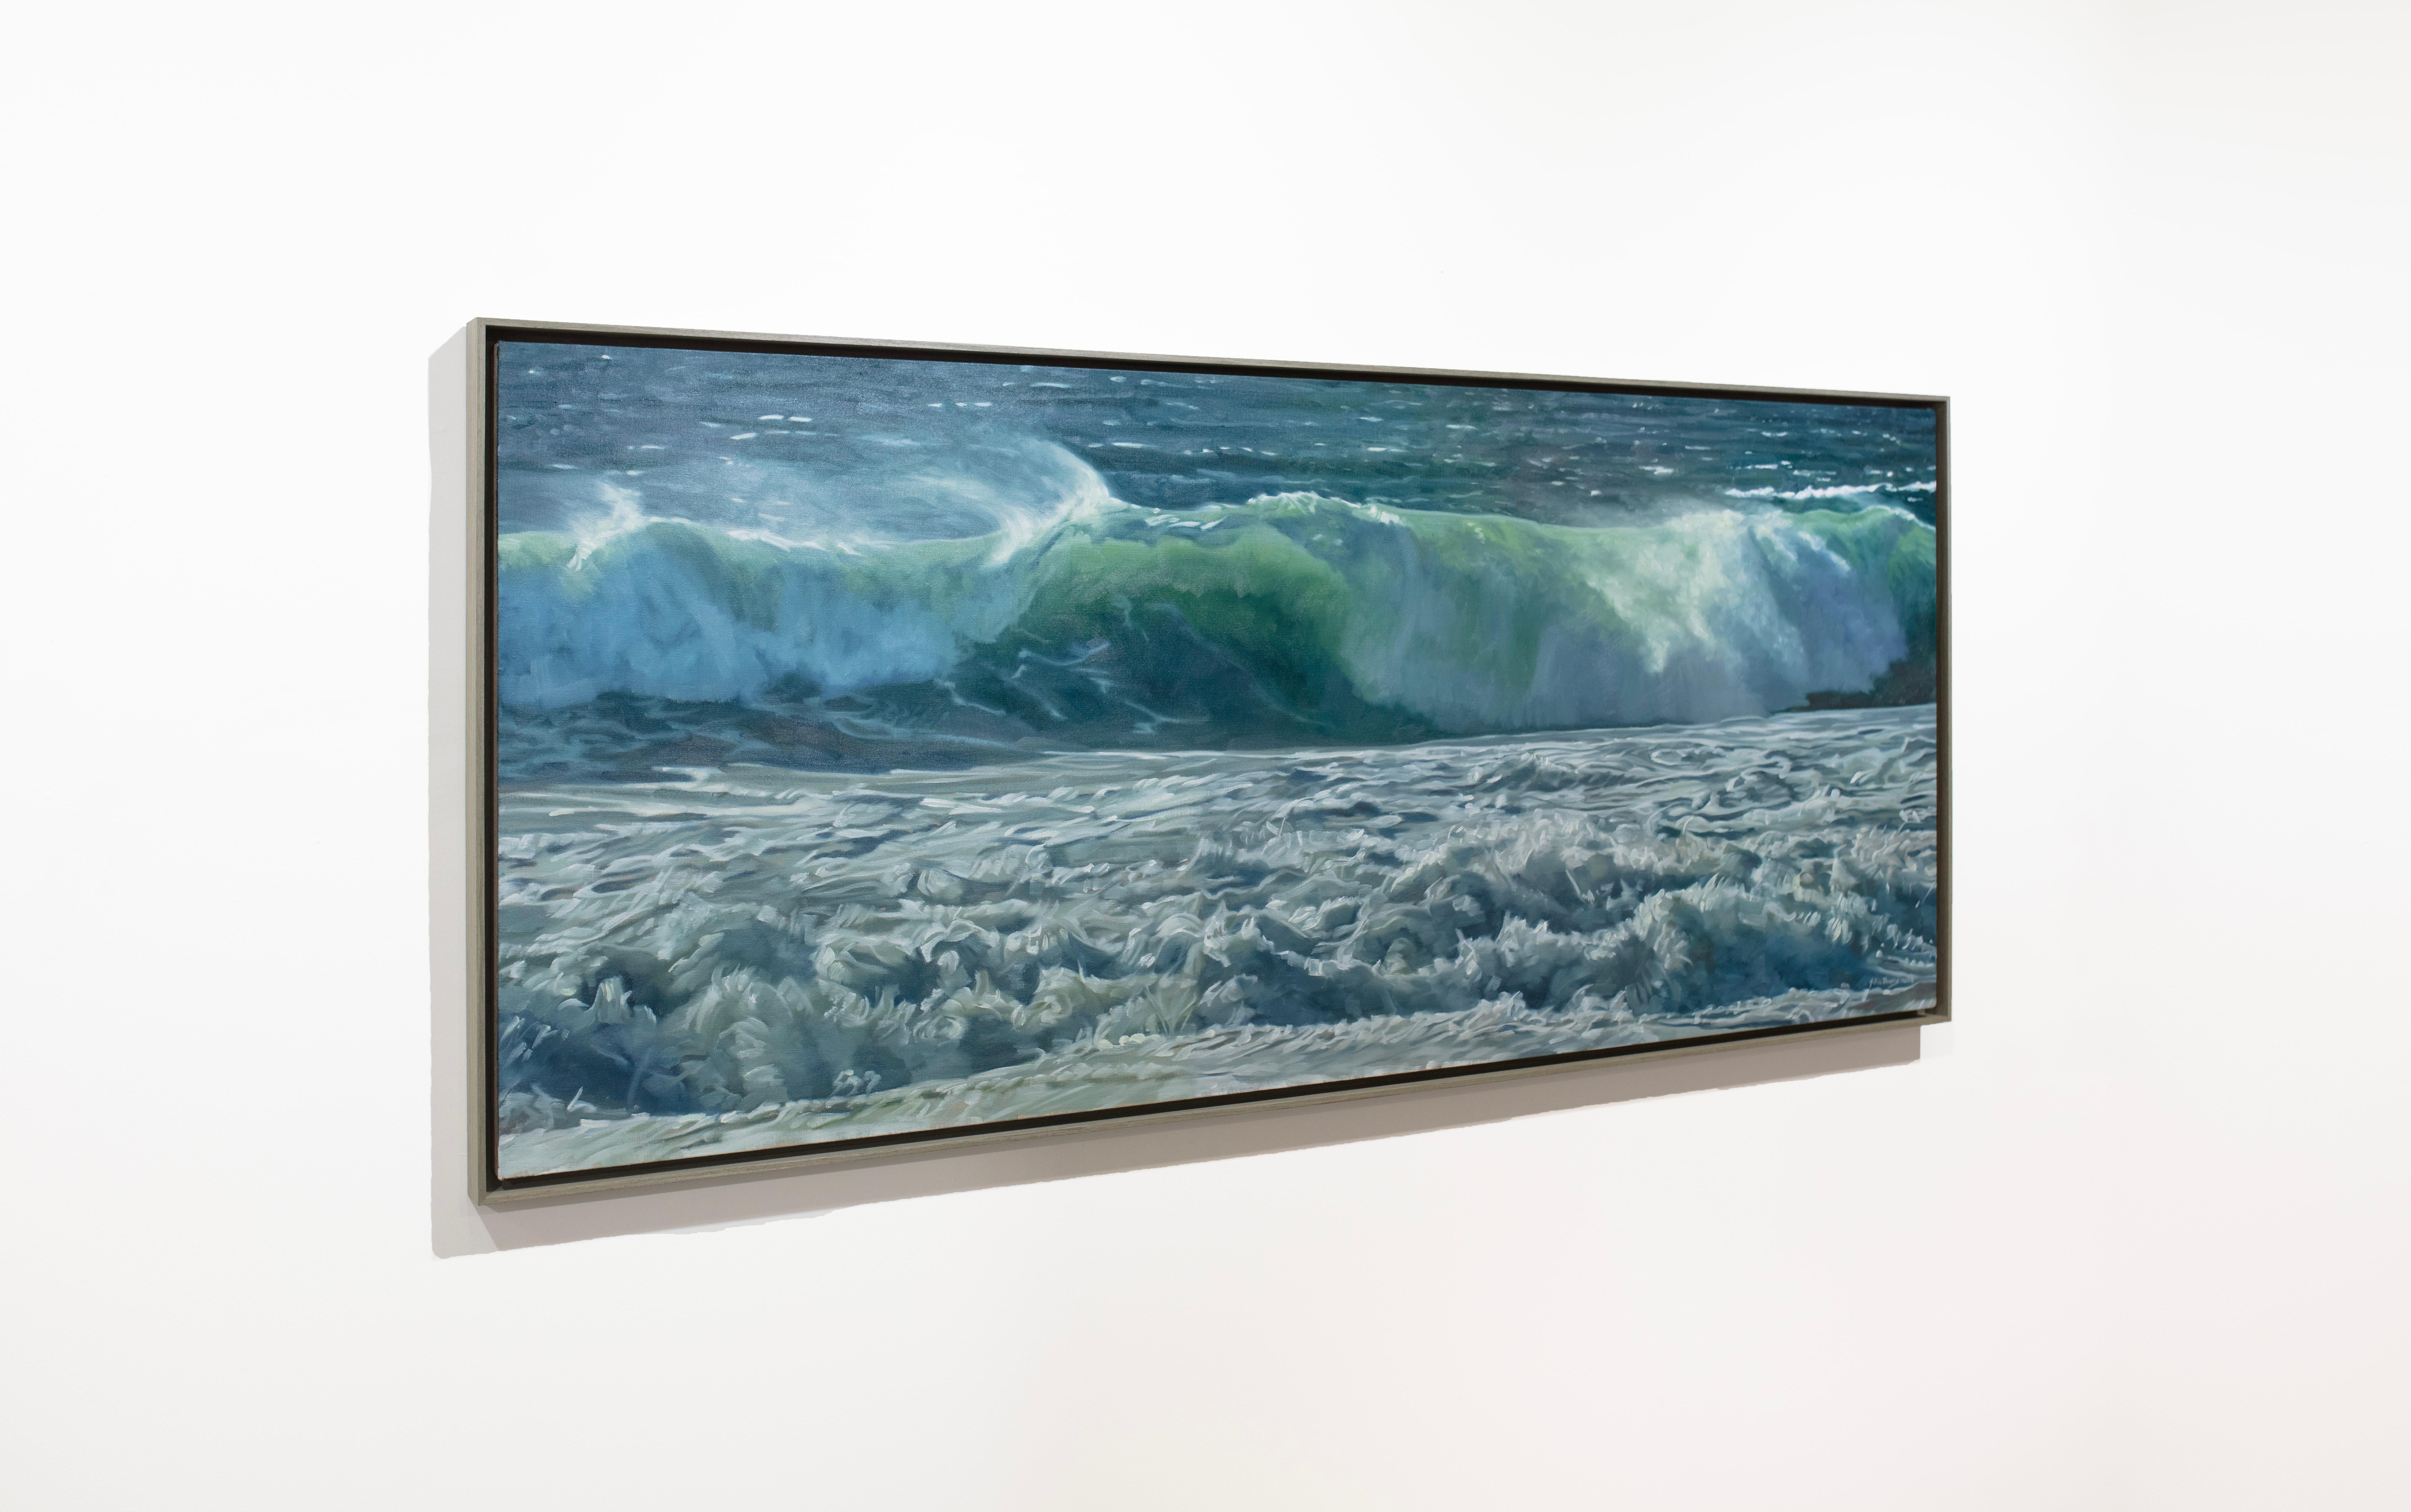 Cette peinture à l'huile côtière de John Harris présente une palette de bleus et de turquoises frais et capture une vue réaliste en gros plan des vagues de l'océan s'écrasant sur un rivage. Elle est réalisée avec de la peinture à l'huile sur une